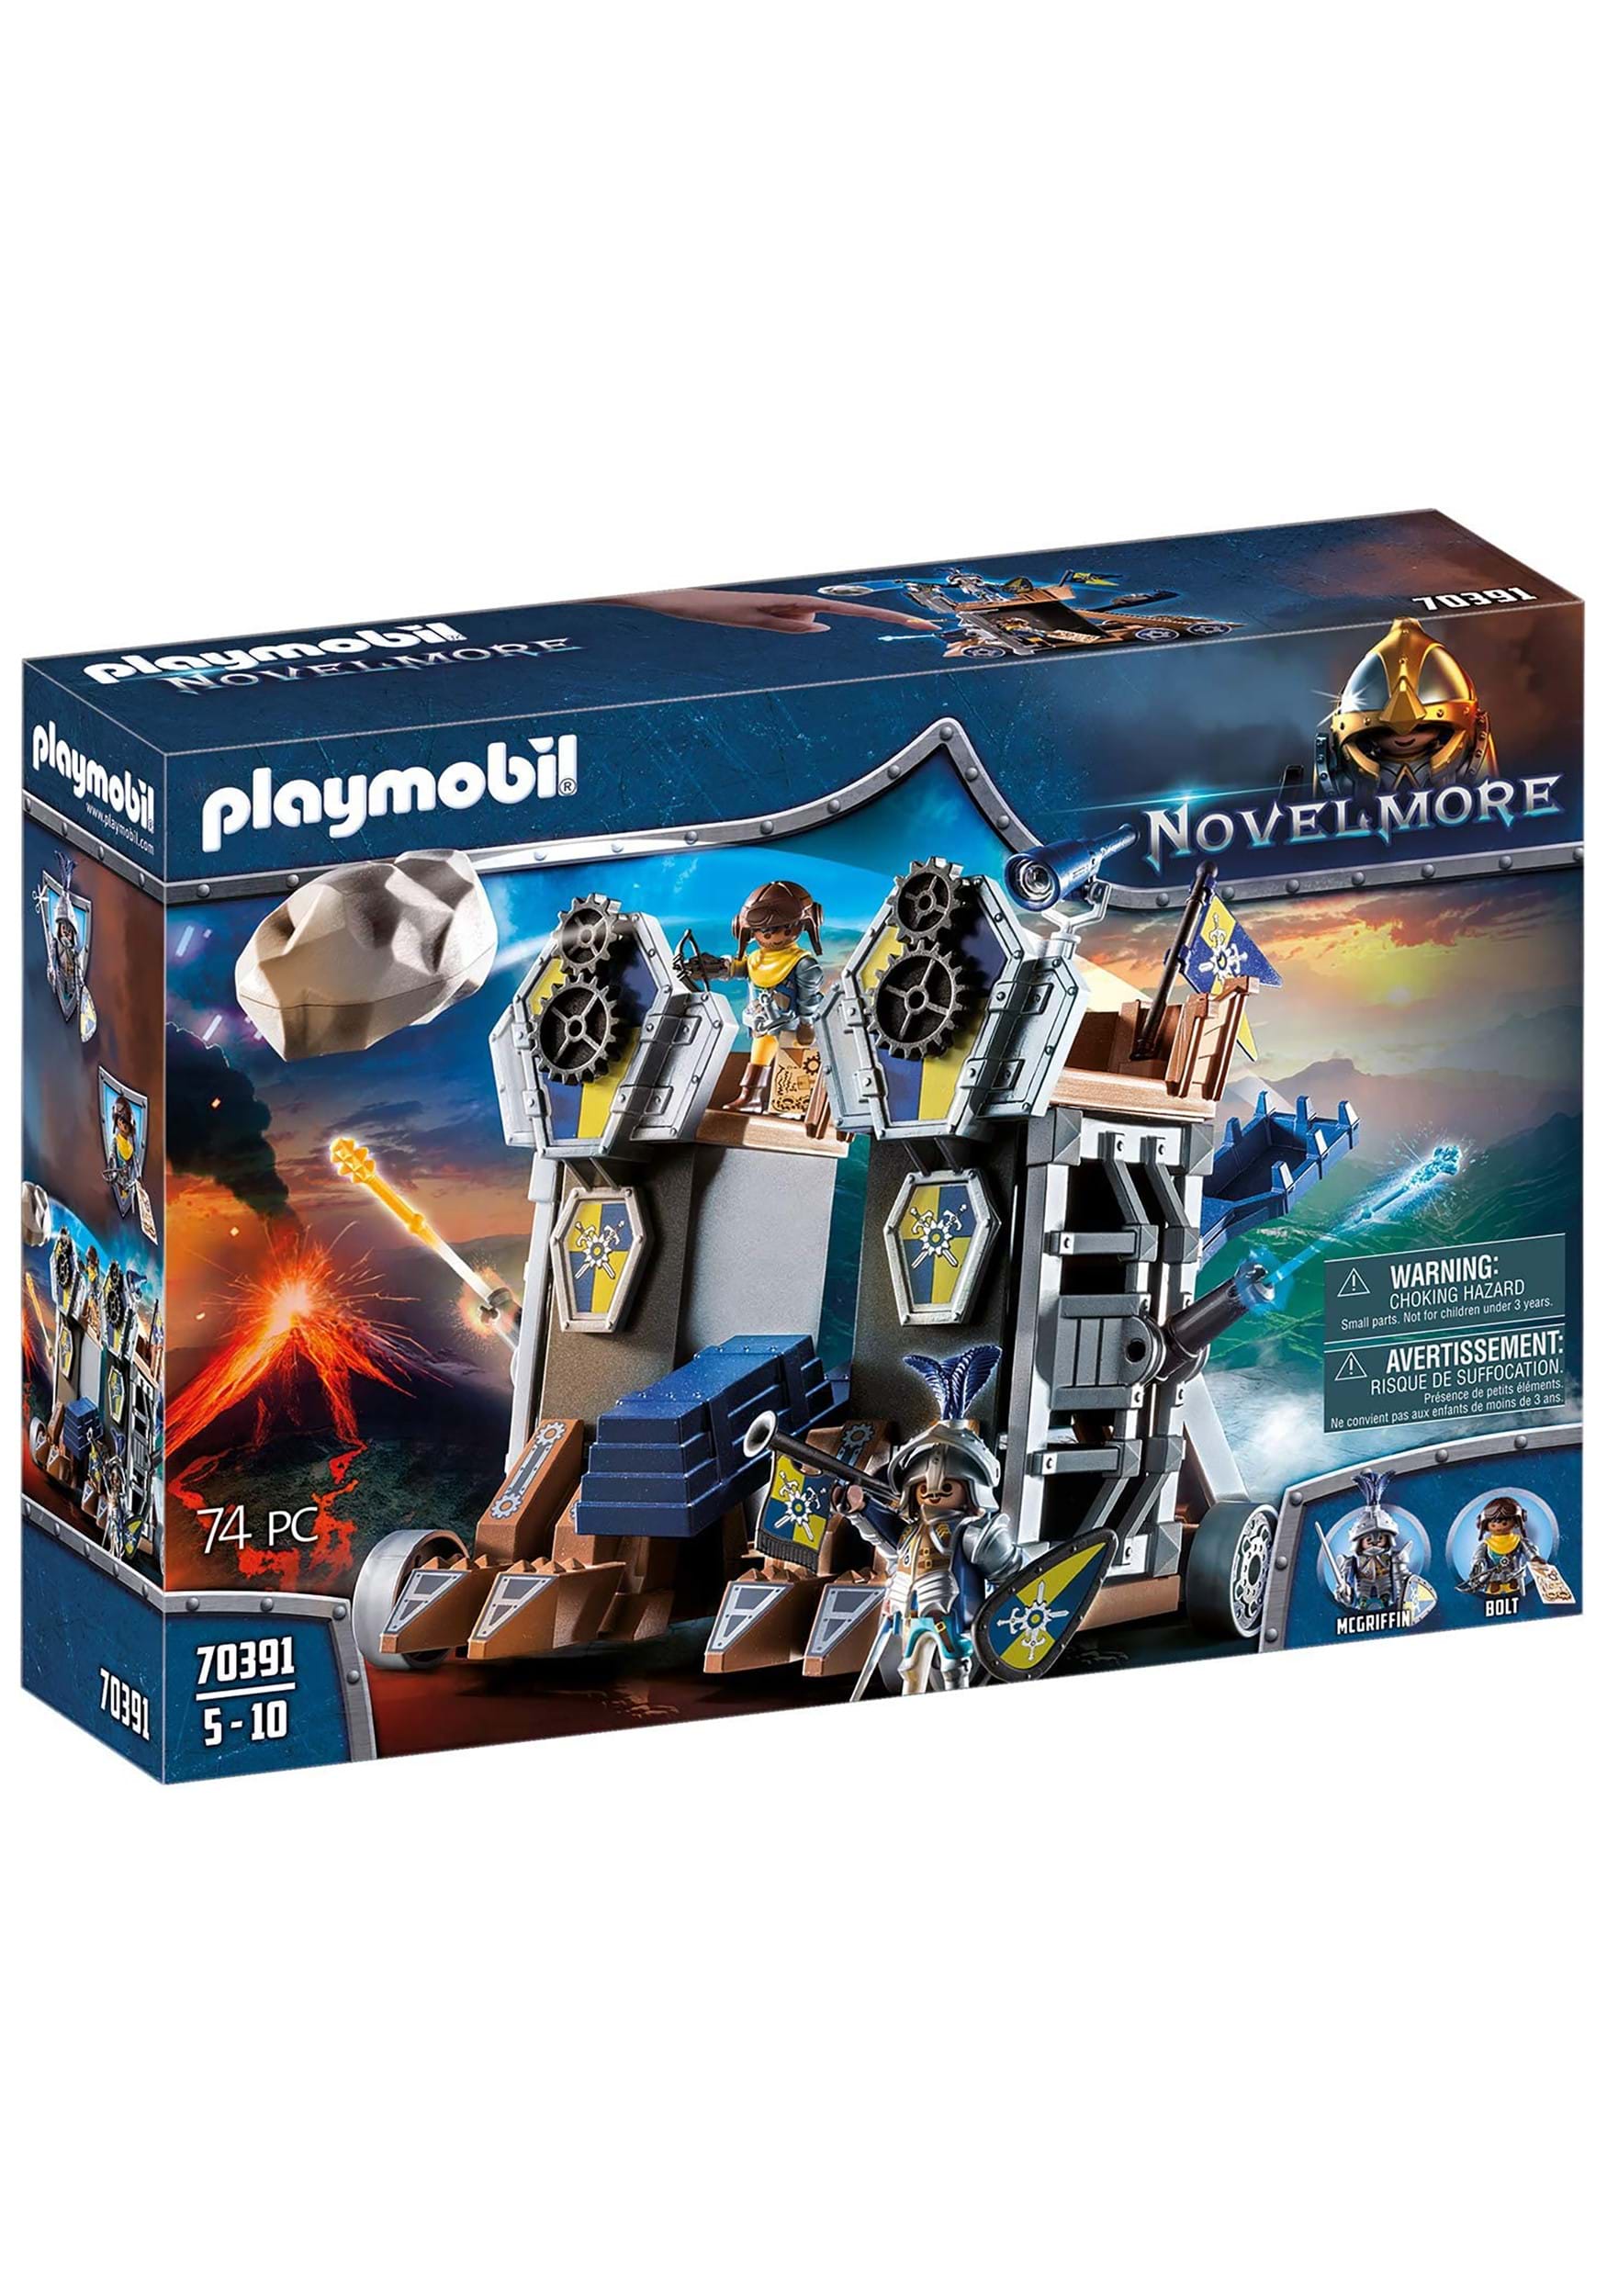 Playmobil Novelmore Mobile Fortress Set